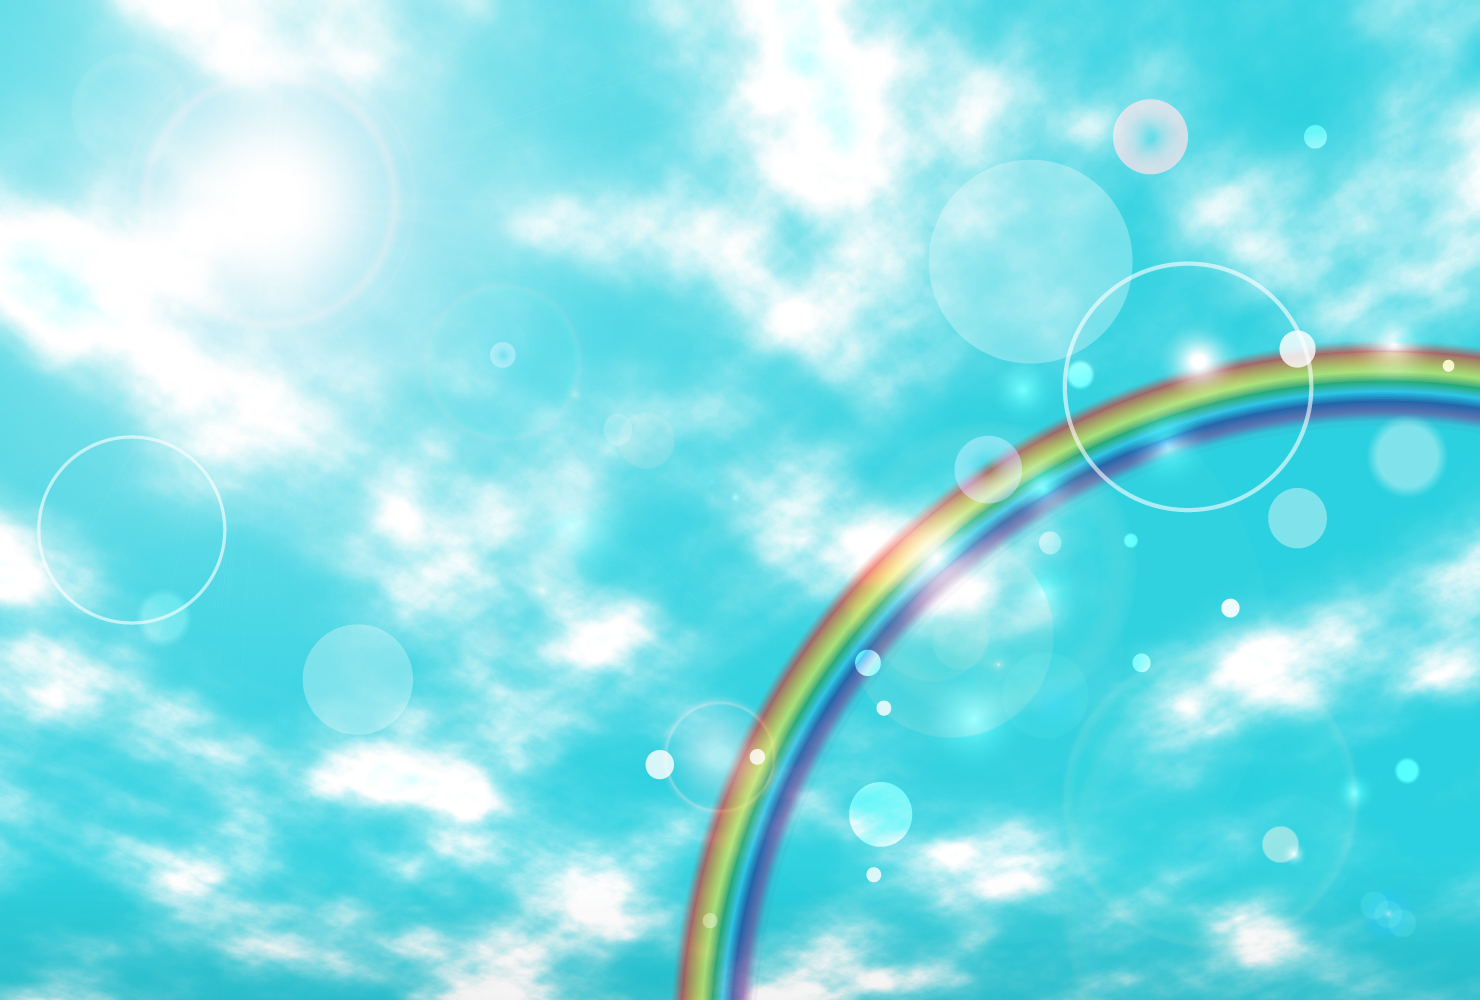 青空と虹とシャボン玉の背景イラスト